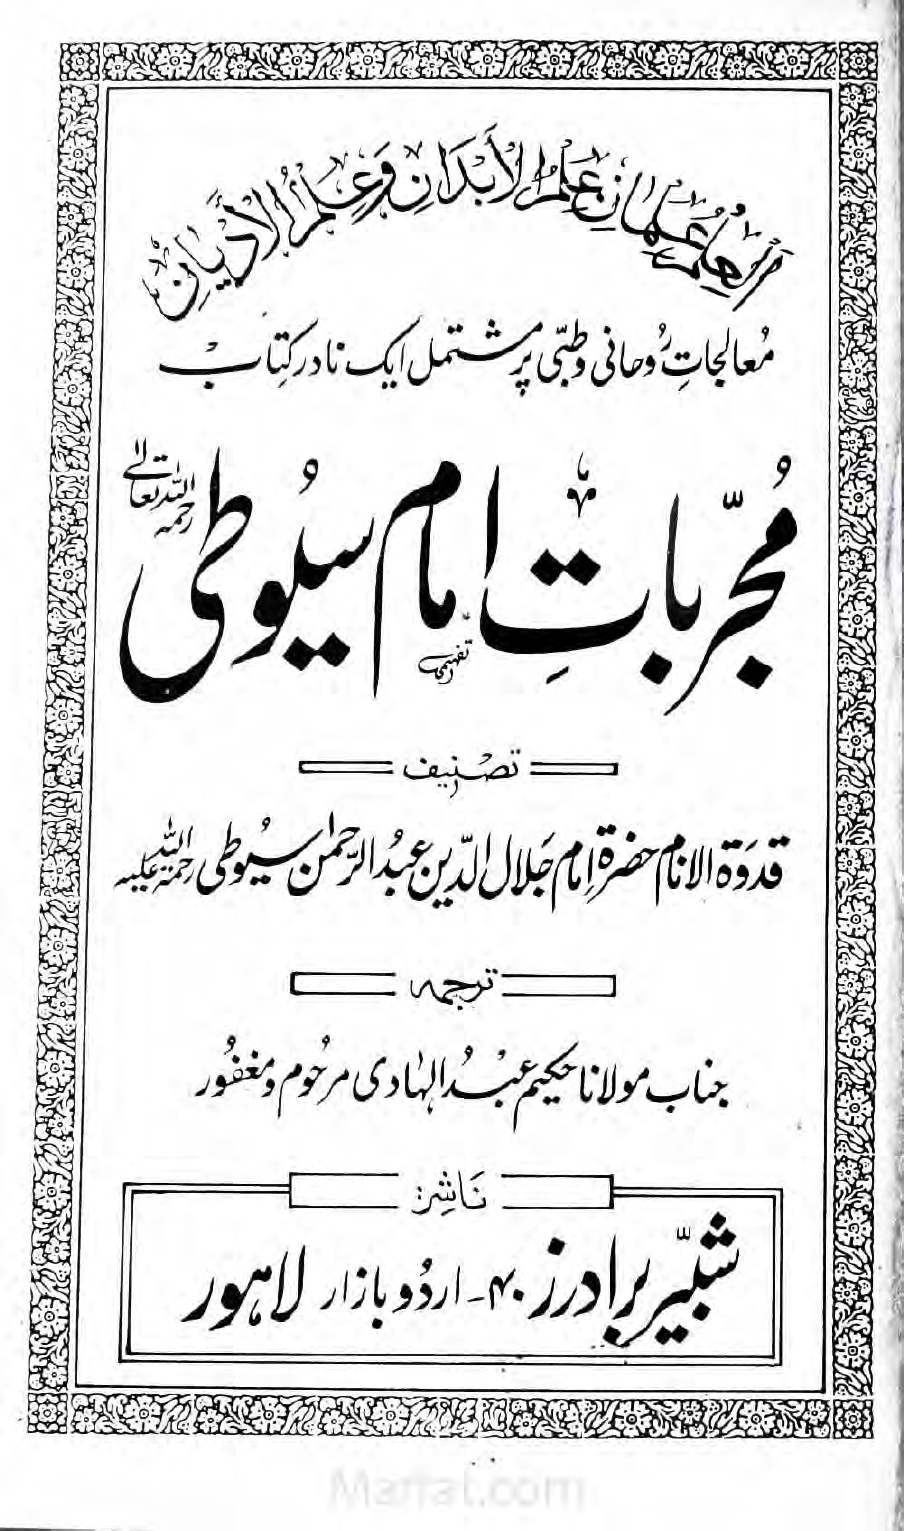 Mujarbat e Imam Suyuti by Jalaluddin Suyuti